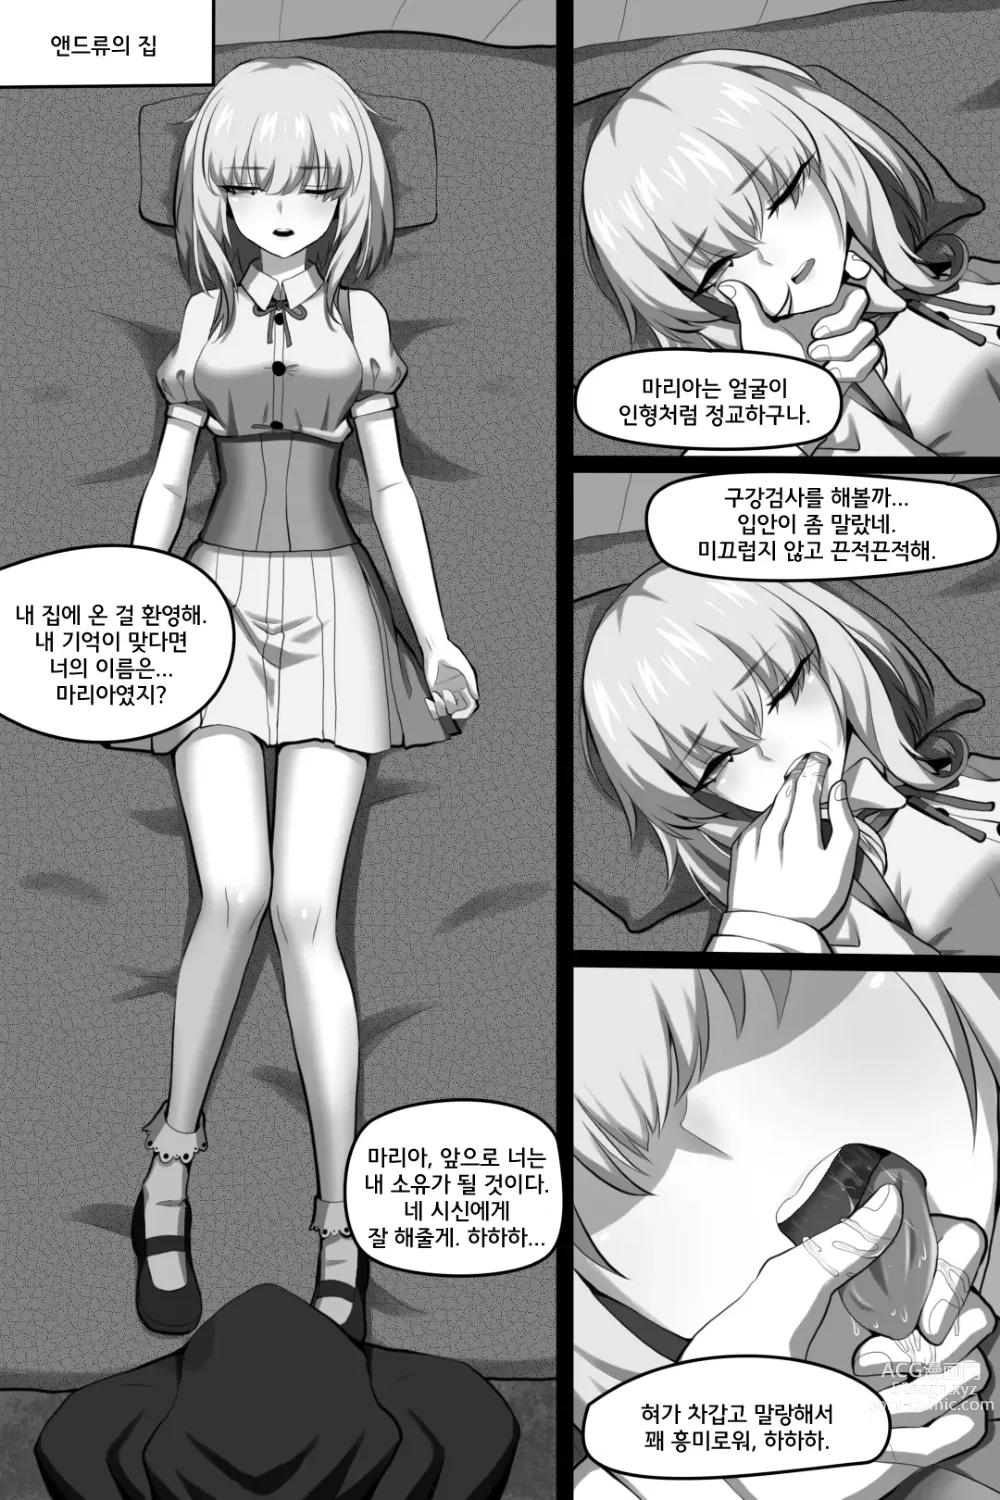 Page 9 of doujinshi 빈리안 시 1화: 비밀을 쓰는 자